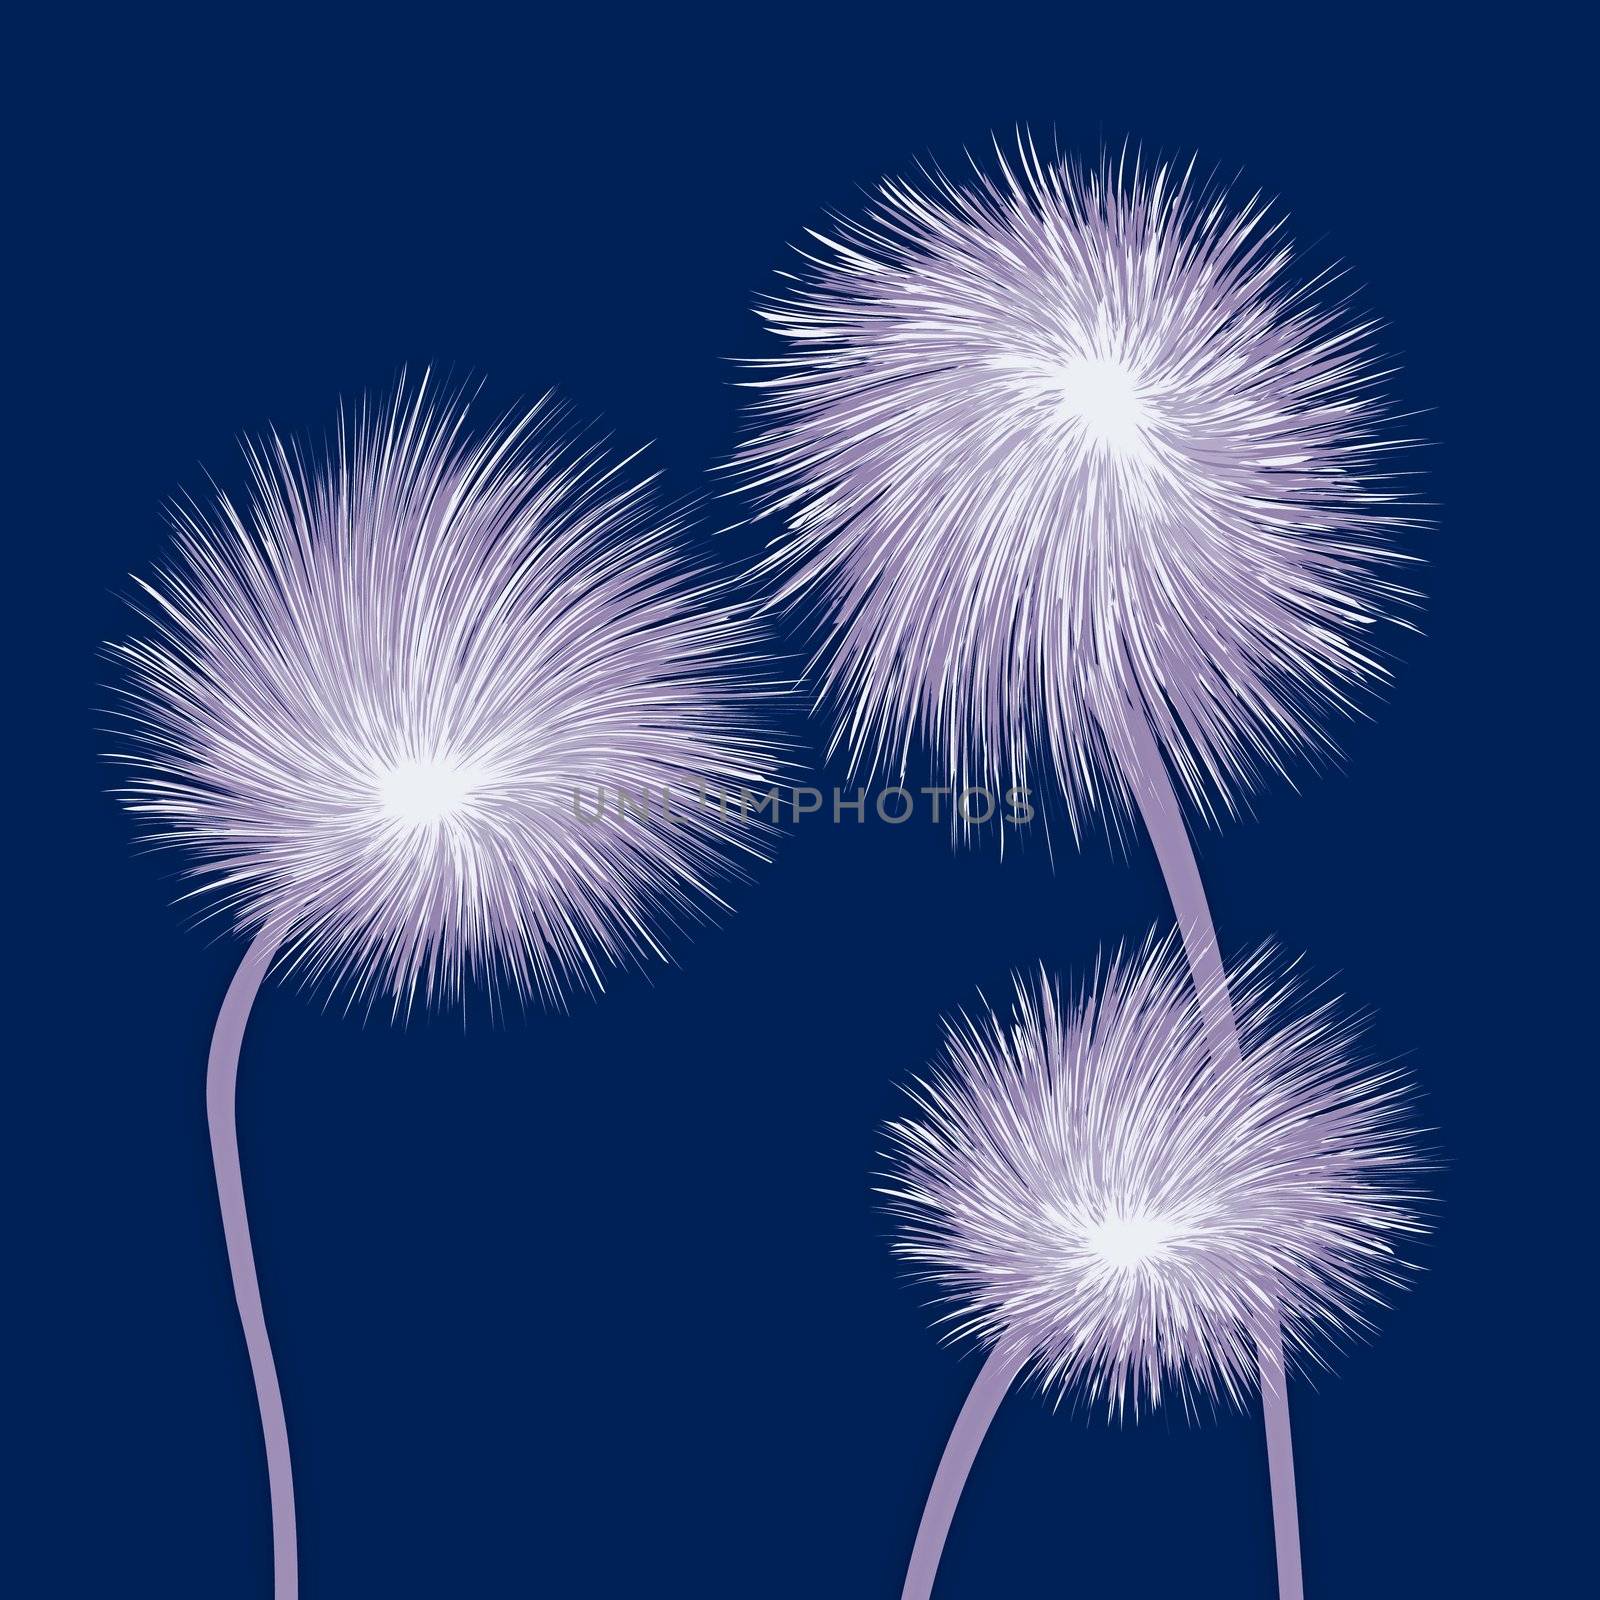 dandelions by Lirch